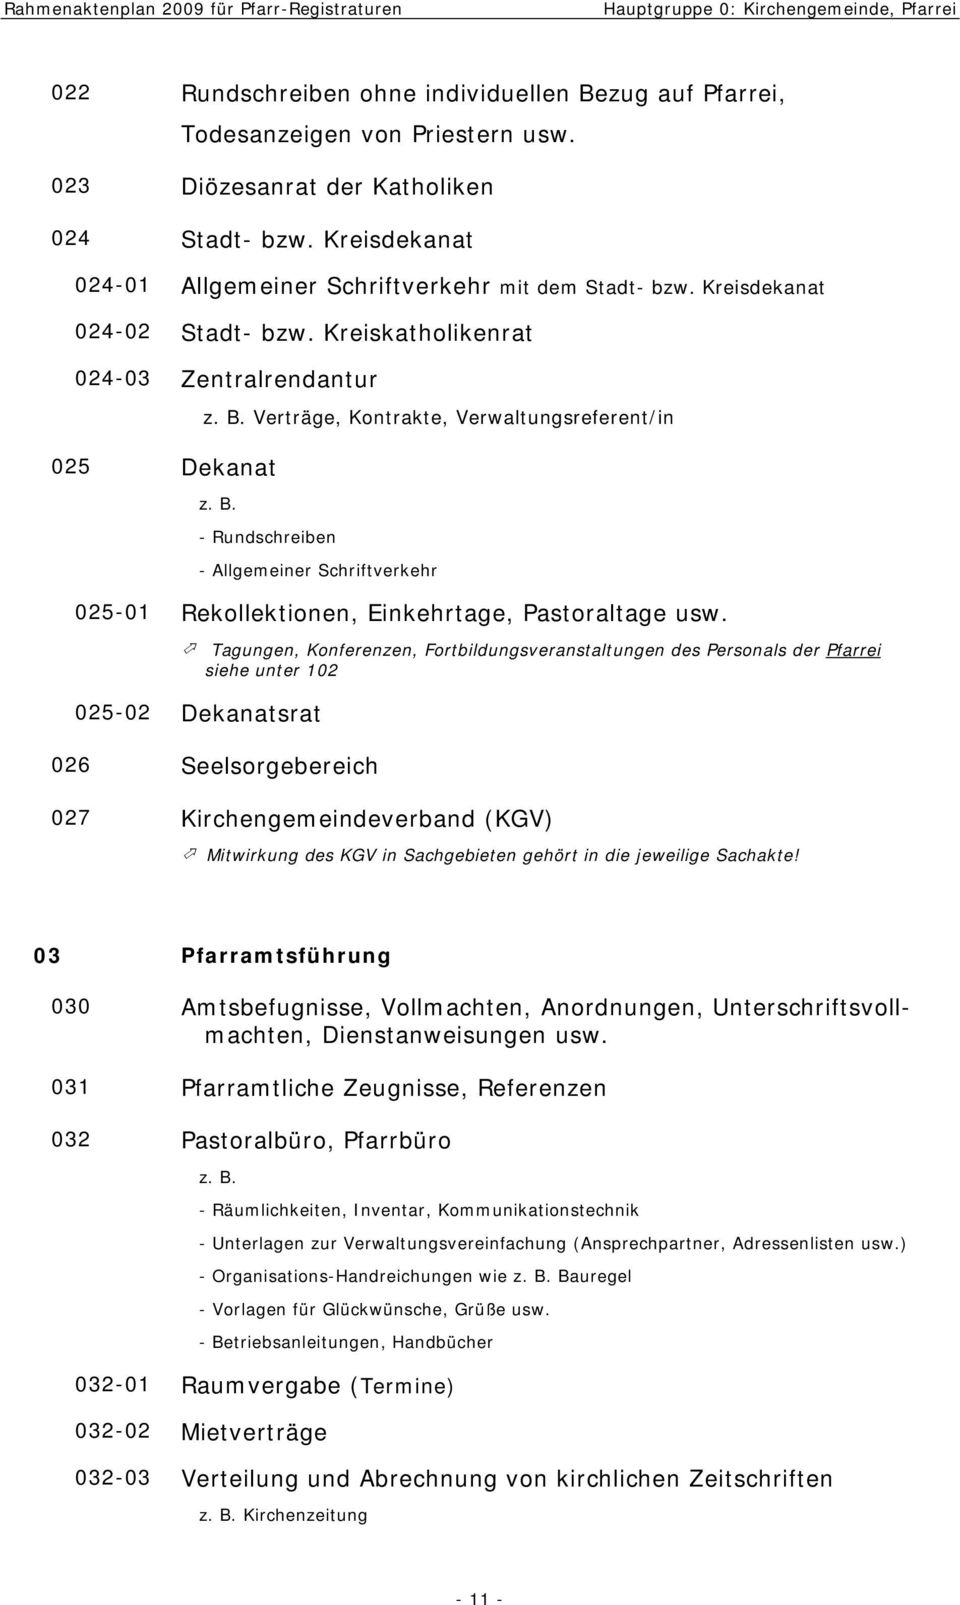 Verträge, Kontrakte, Verwaltungsreferent/in z. B. - Rundschreiben - Allgemeiner Schriftverkehr 025-01 Rekollektionen, Einkehrtage, Pastoraltage usw.